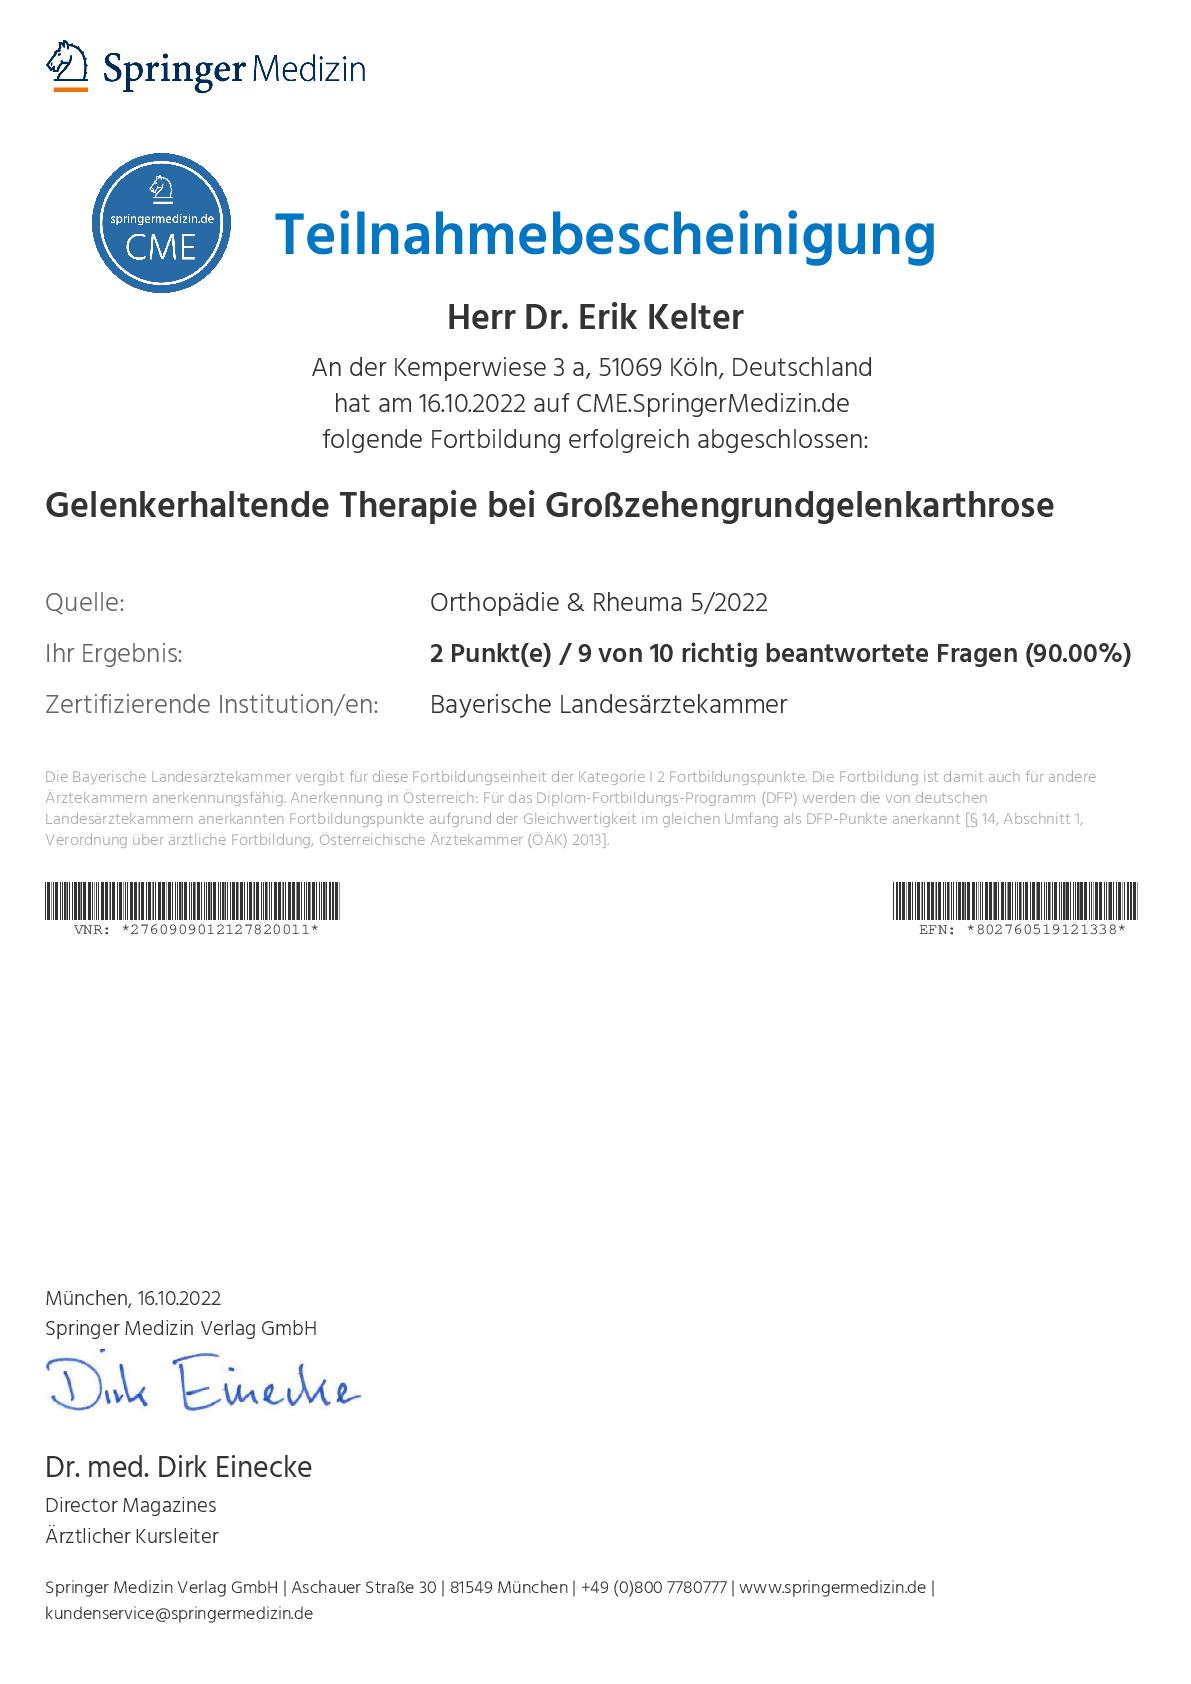 Orthopdie Rheuma 5 2022 Gelenkerhaltende Therapie bei Gro zehengrundgelenkarthrose 2-